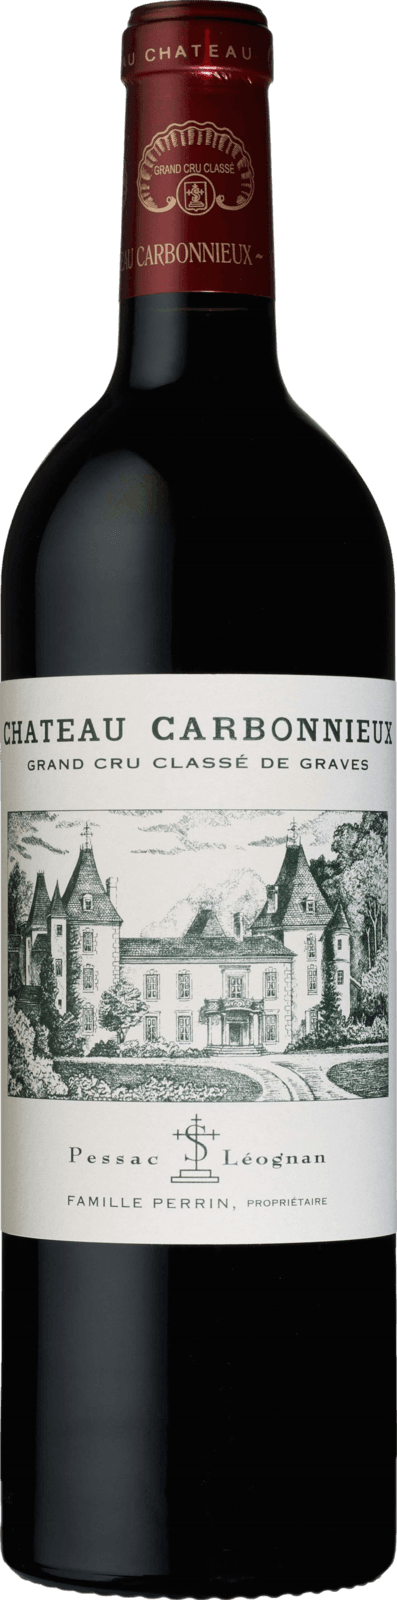 Chateau Carbonnieux 2019